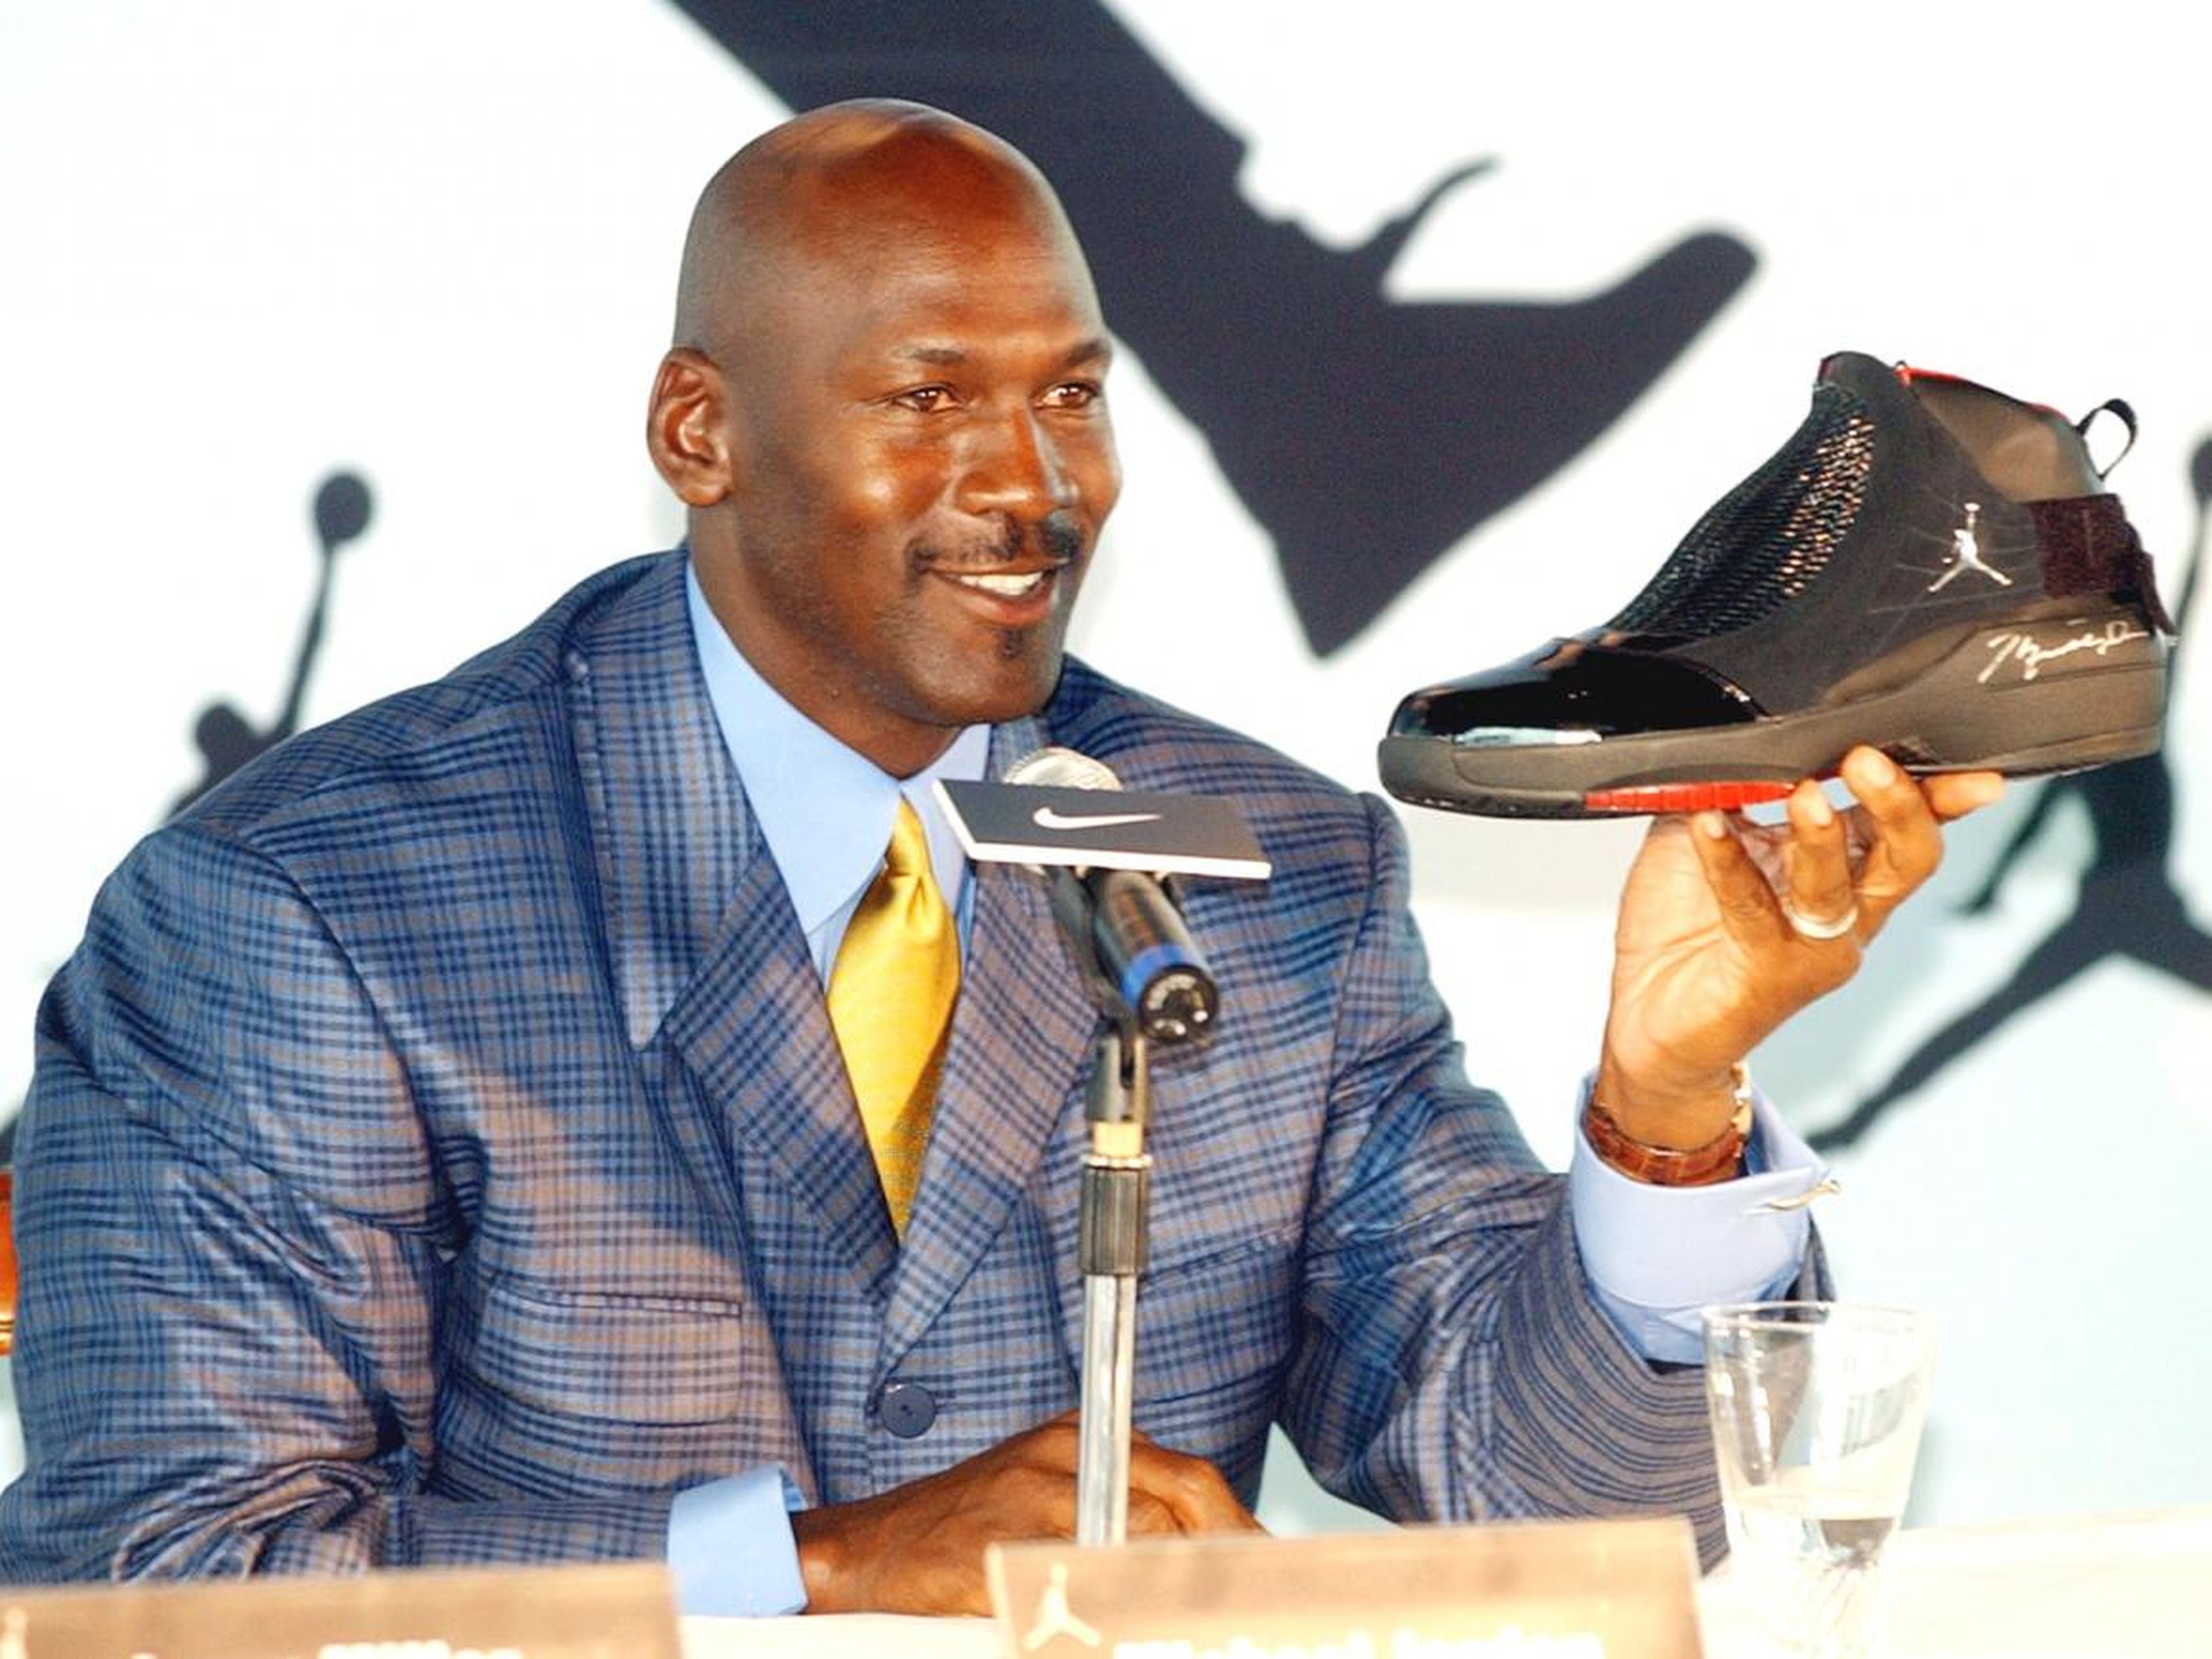 La leyenda de la NBA Michael Jordan sostiene un zapato AJ19 autografiado, el último diseño de la línea de zapatos Air Jordan, en una conferencia de prensa en Hong Kong.